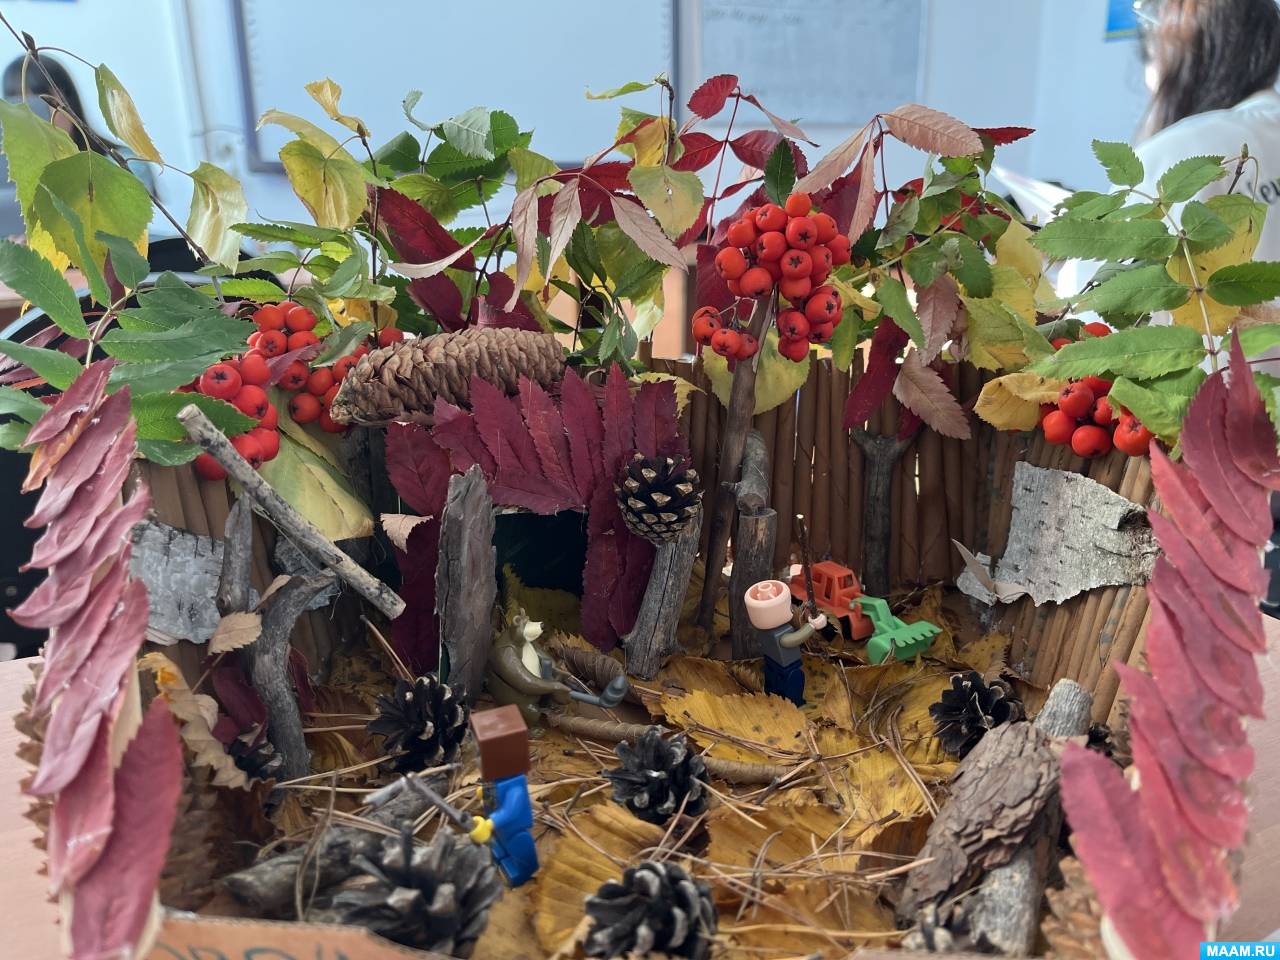 Поделка из листьев, шишек, веточек, коры березы и игрушек из киндер-сюрприза «Сказочный дворик». Фотоотчет